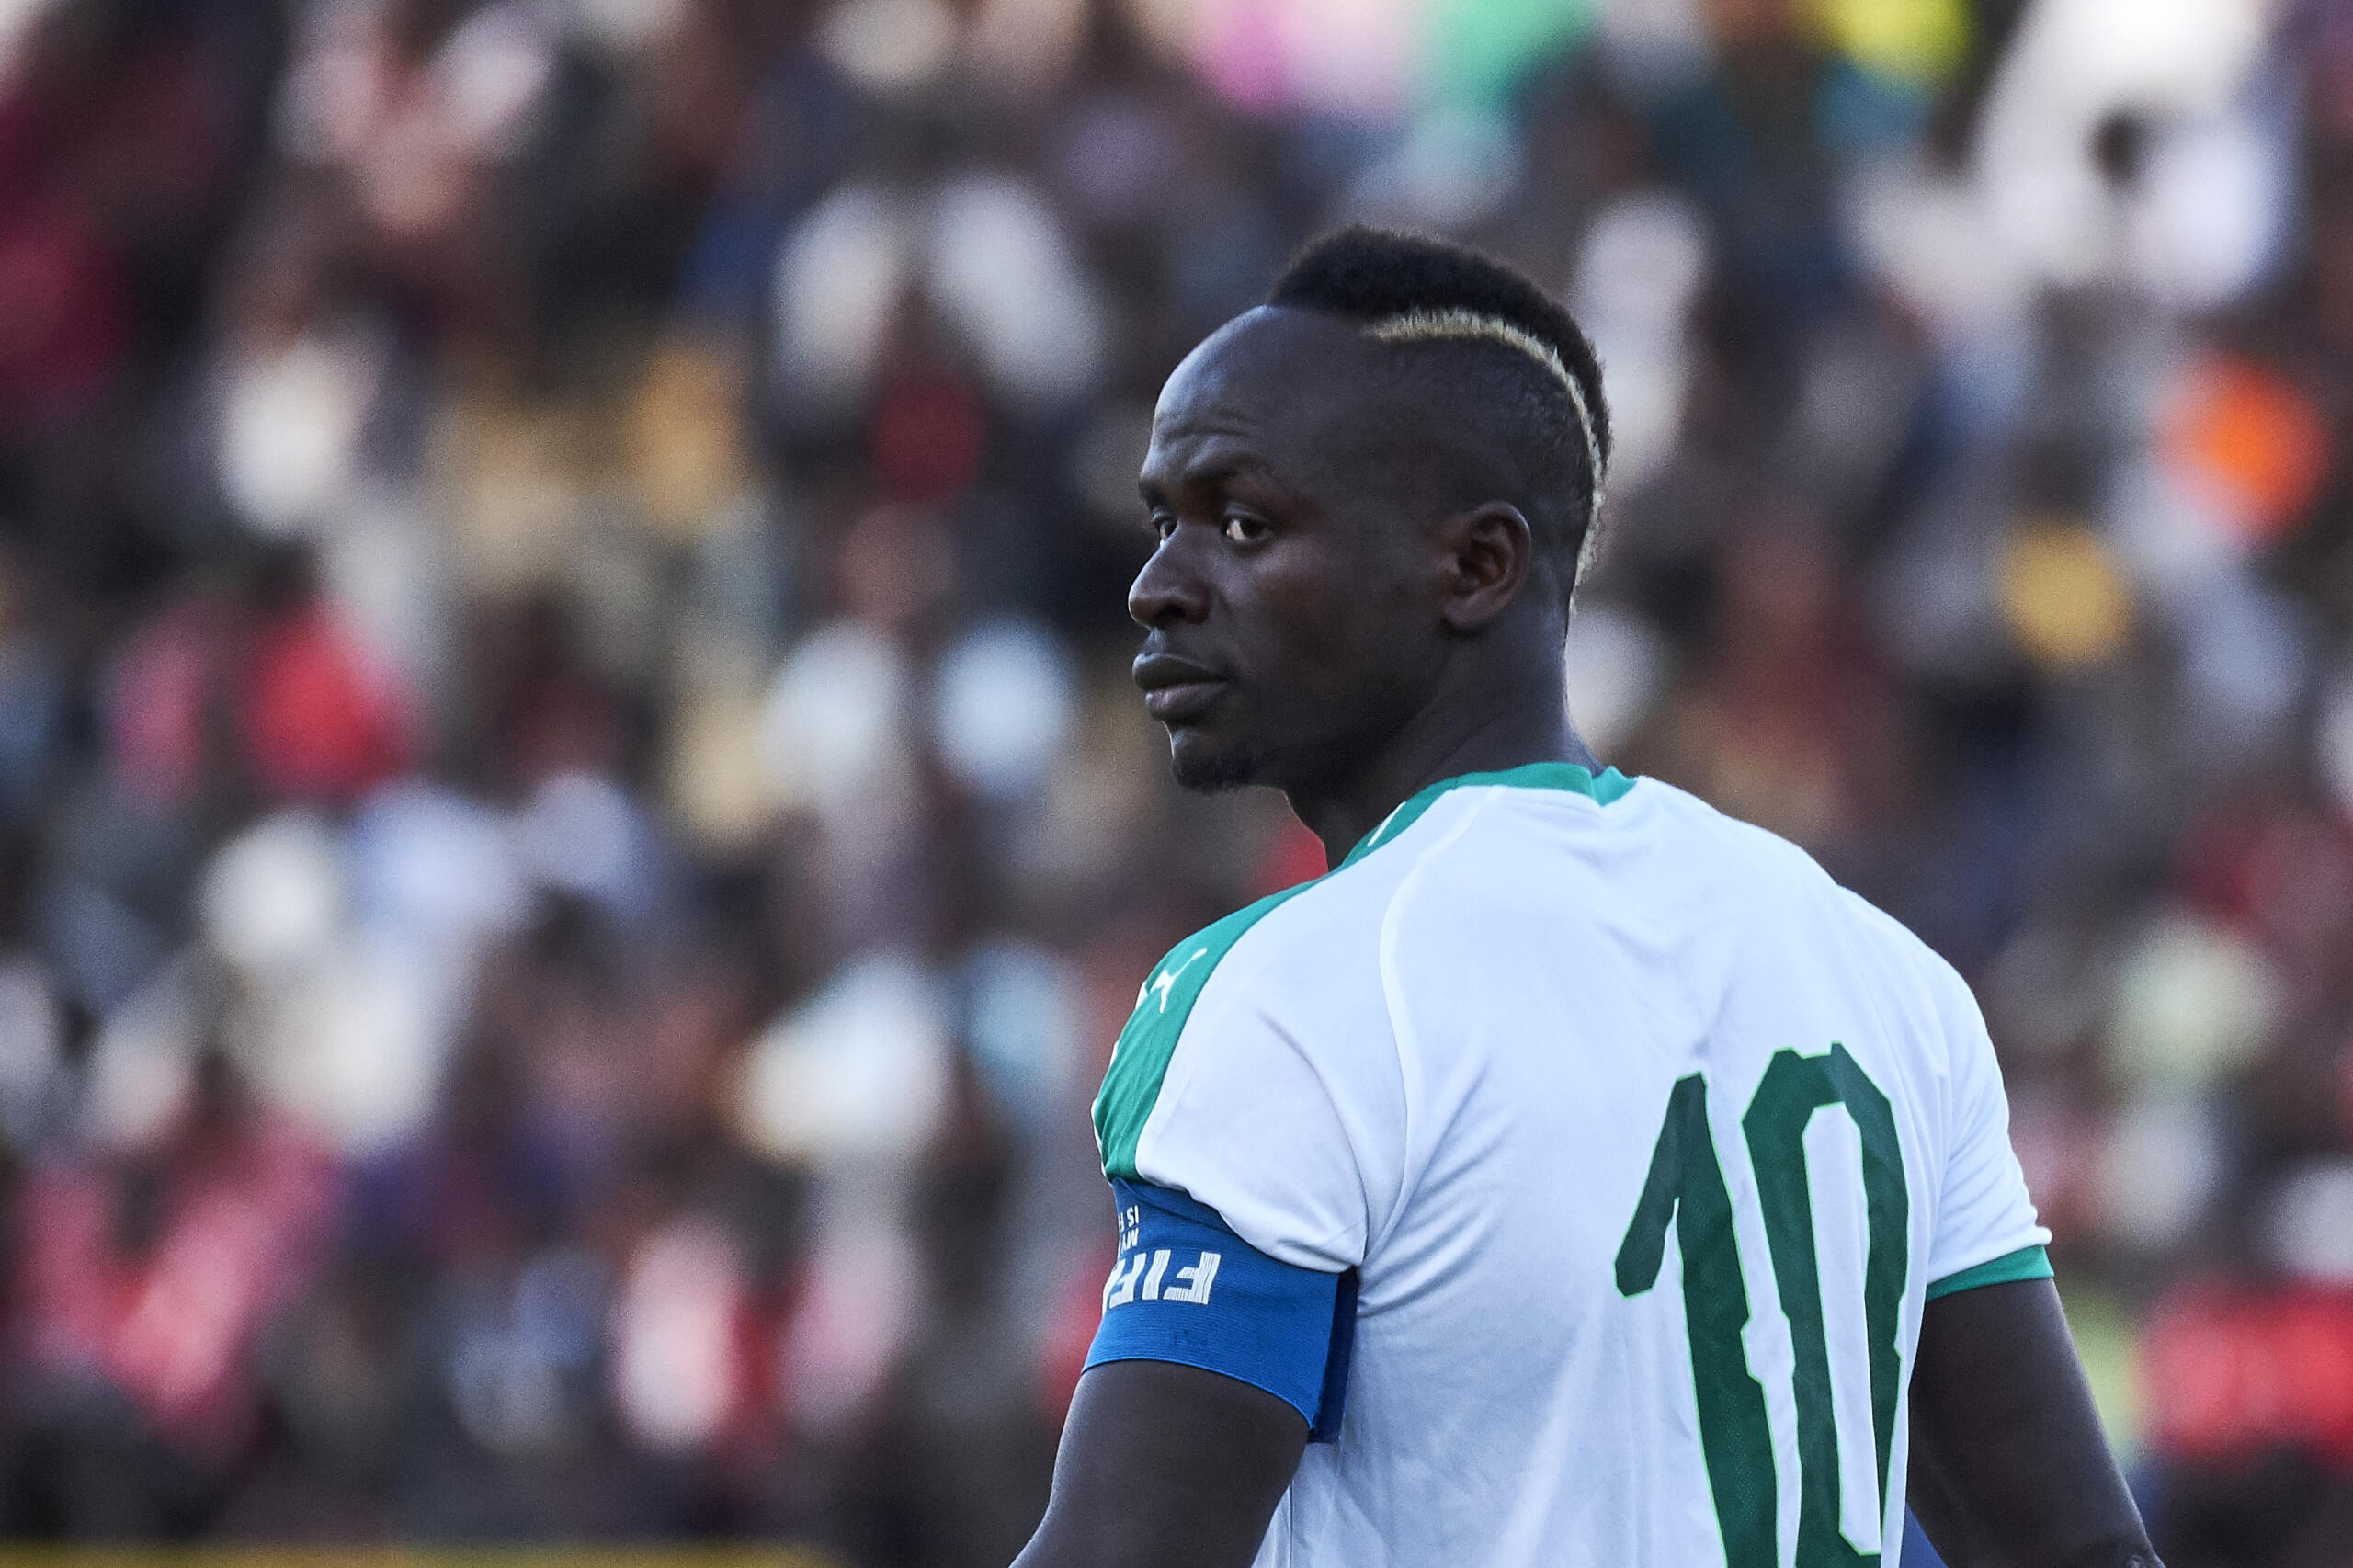 Nelle African Qualifiers importanti vittorie di Senegal e Marocco, che sembrano chiudere la pratica. Bel testa a testa Ghana-Sudafrica.